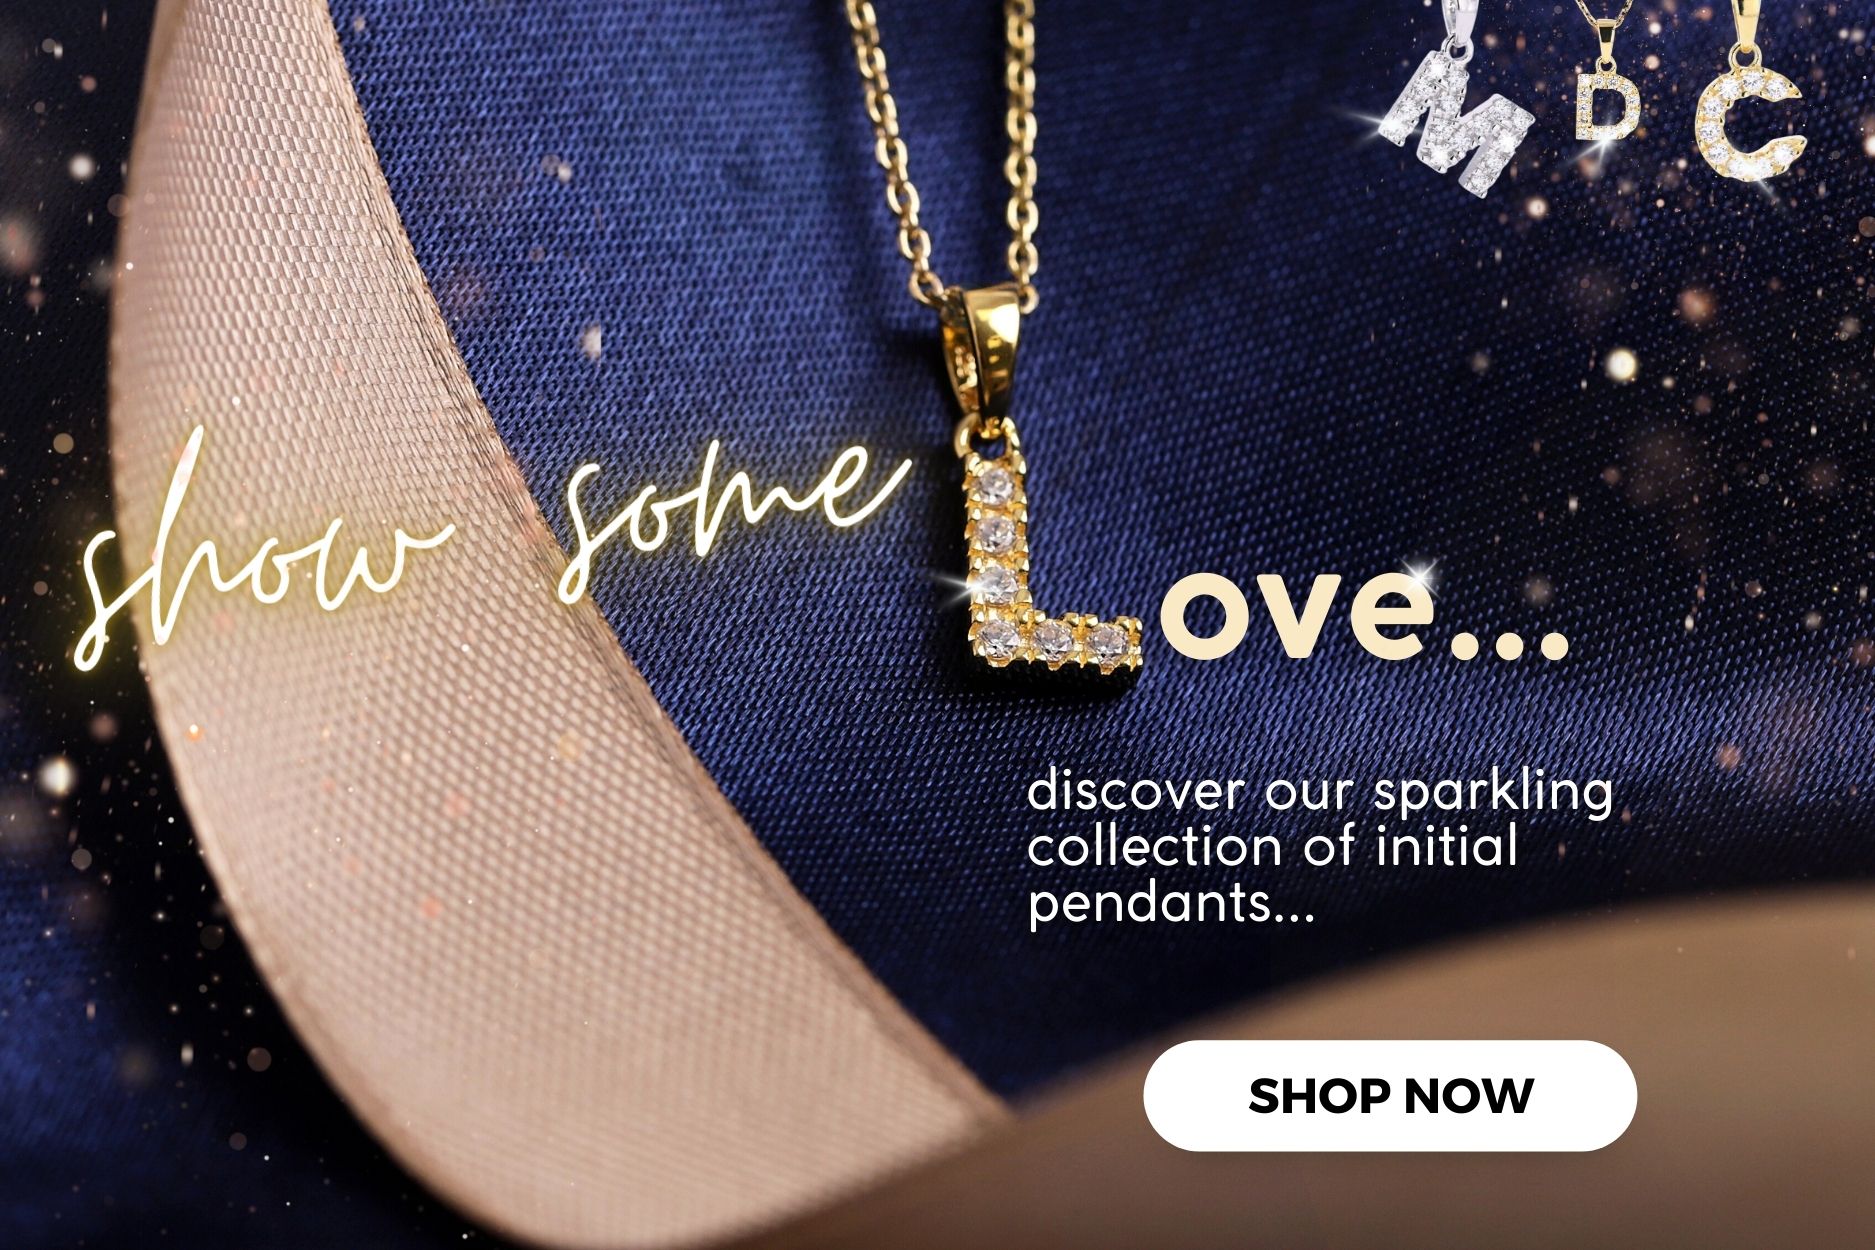 Warren James Jewellers Website | Buy Amazing Jewellery - For Less